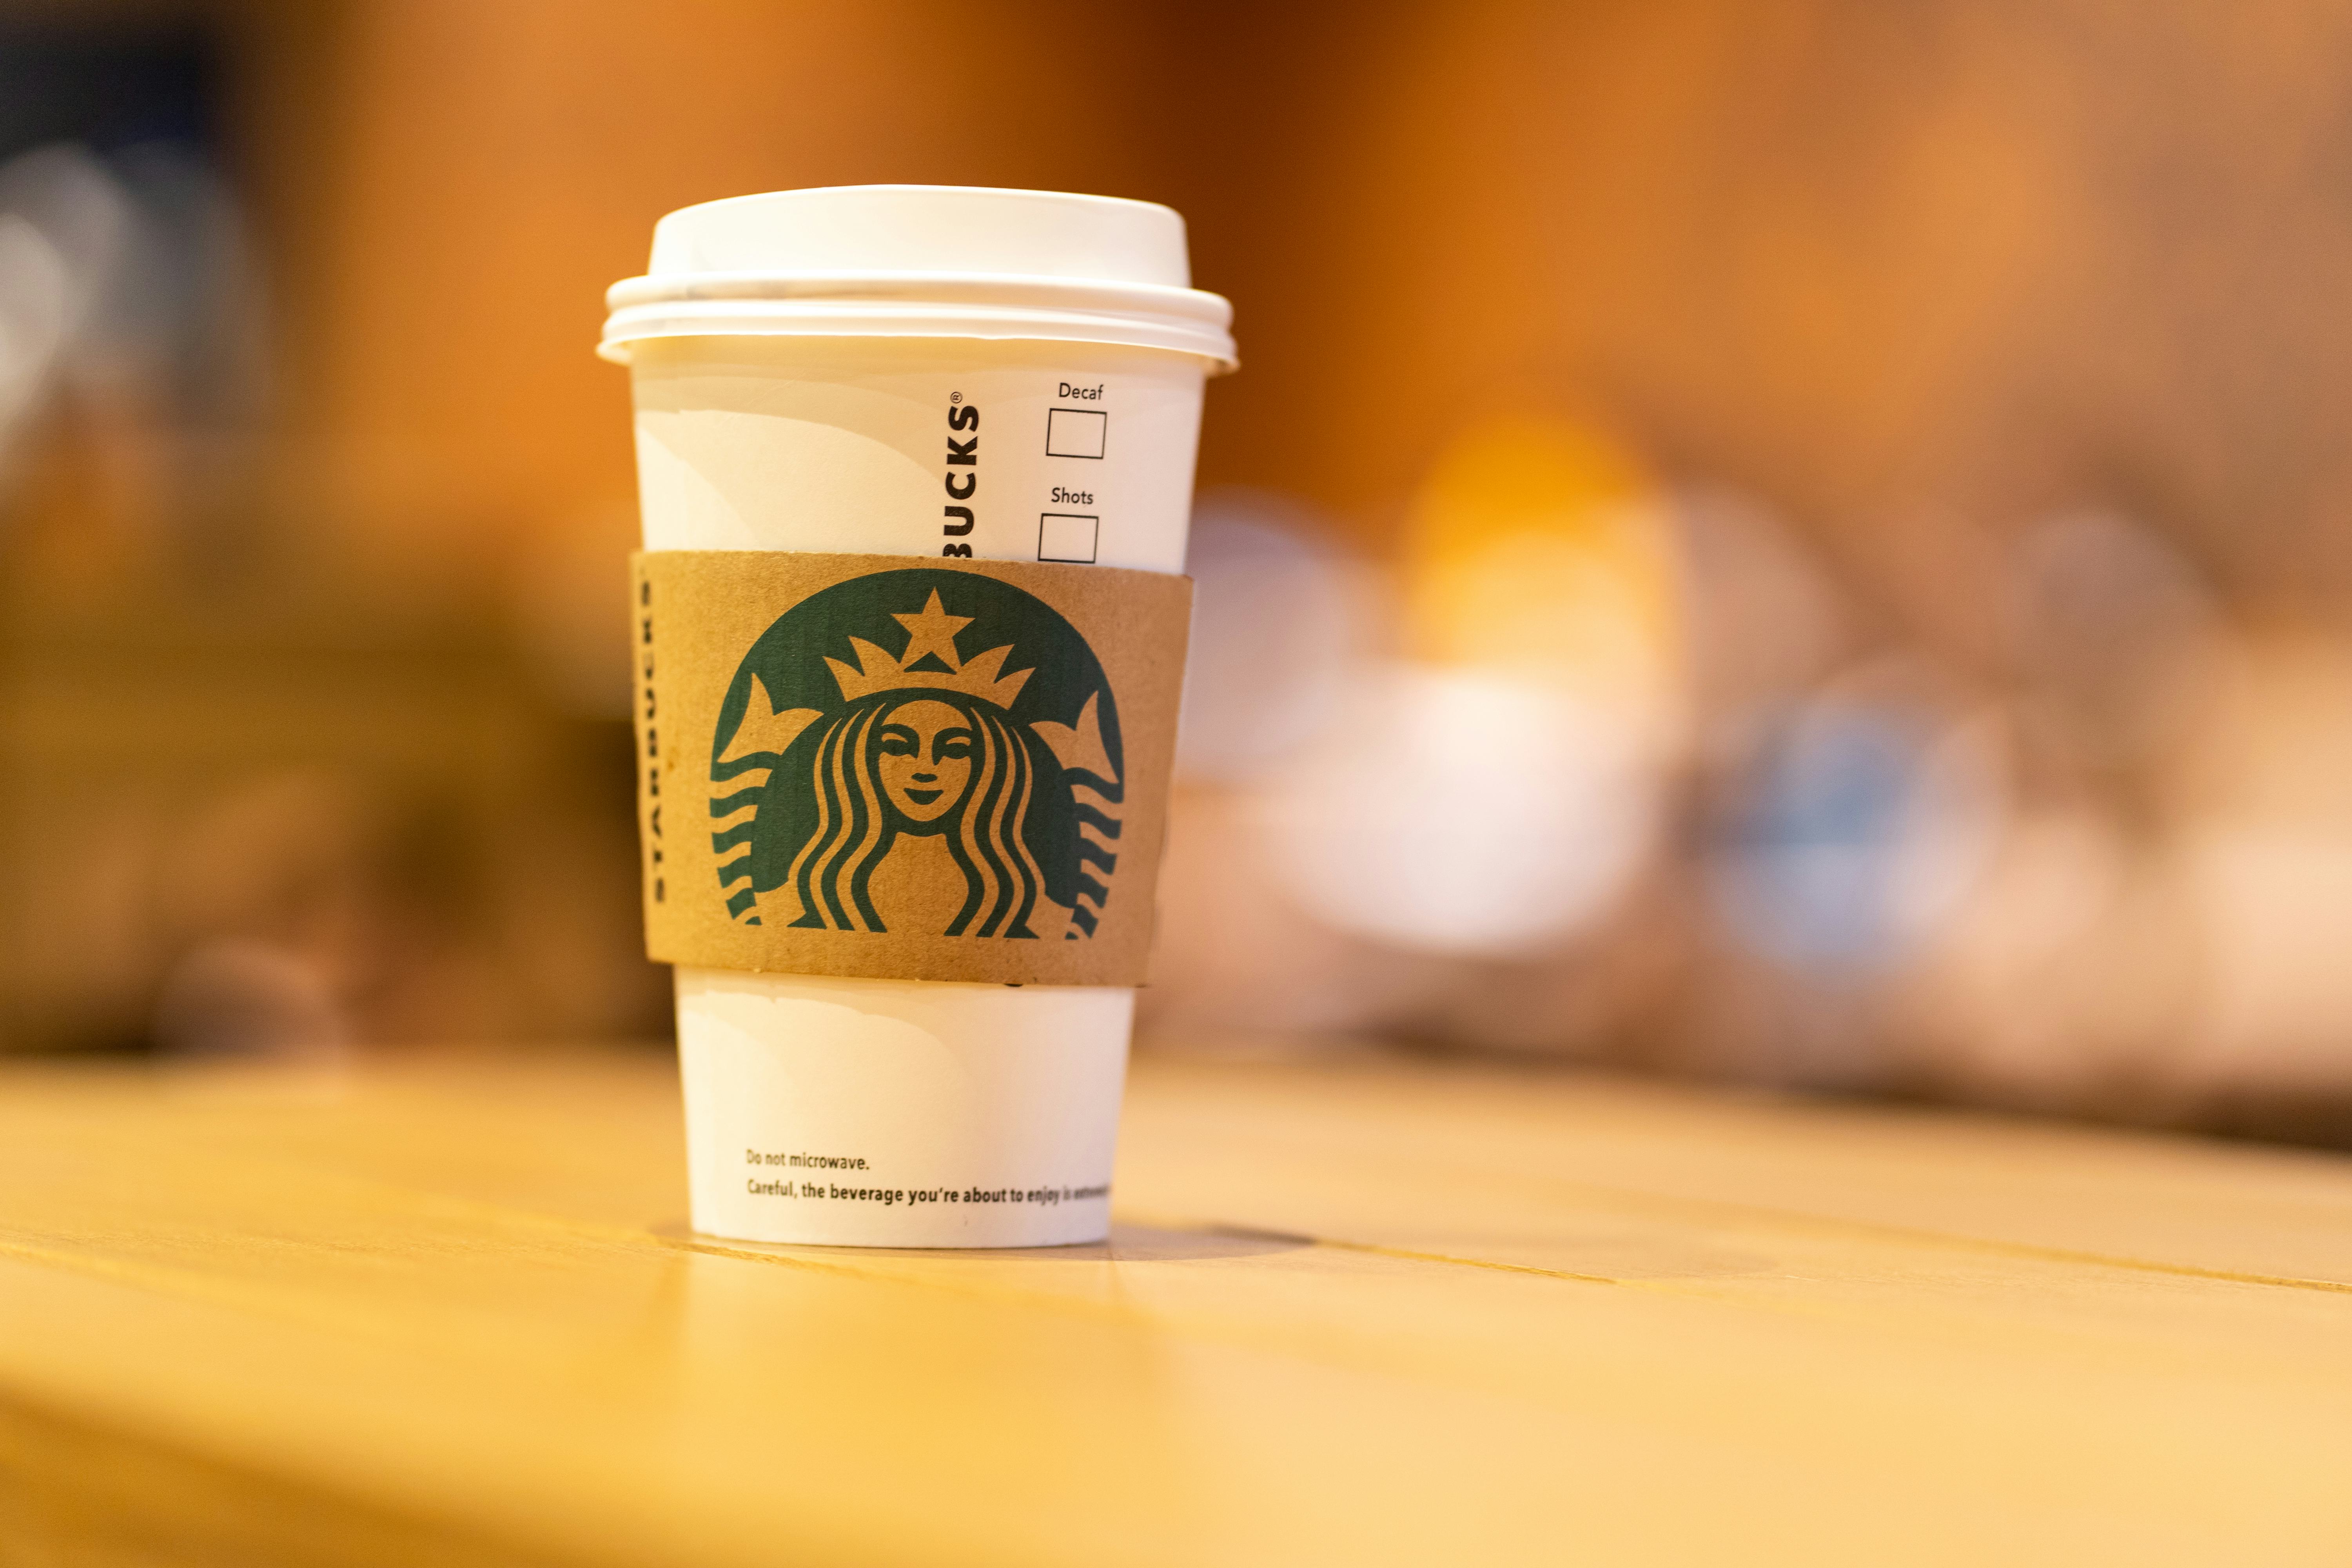 Starbucks opent op Rokin Amsterdam nieuwe vestiging met grootste terras